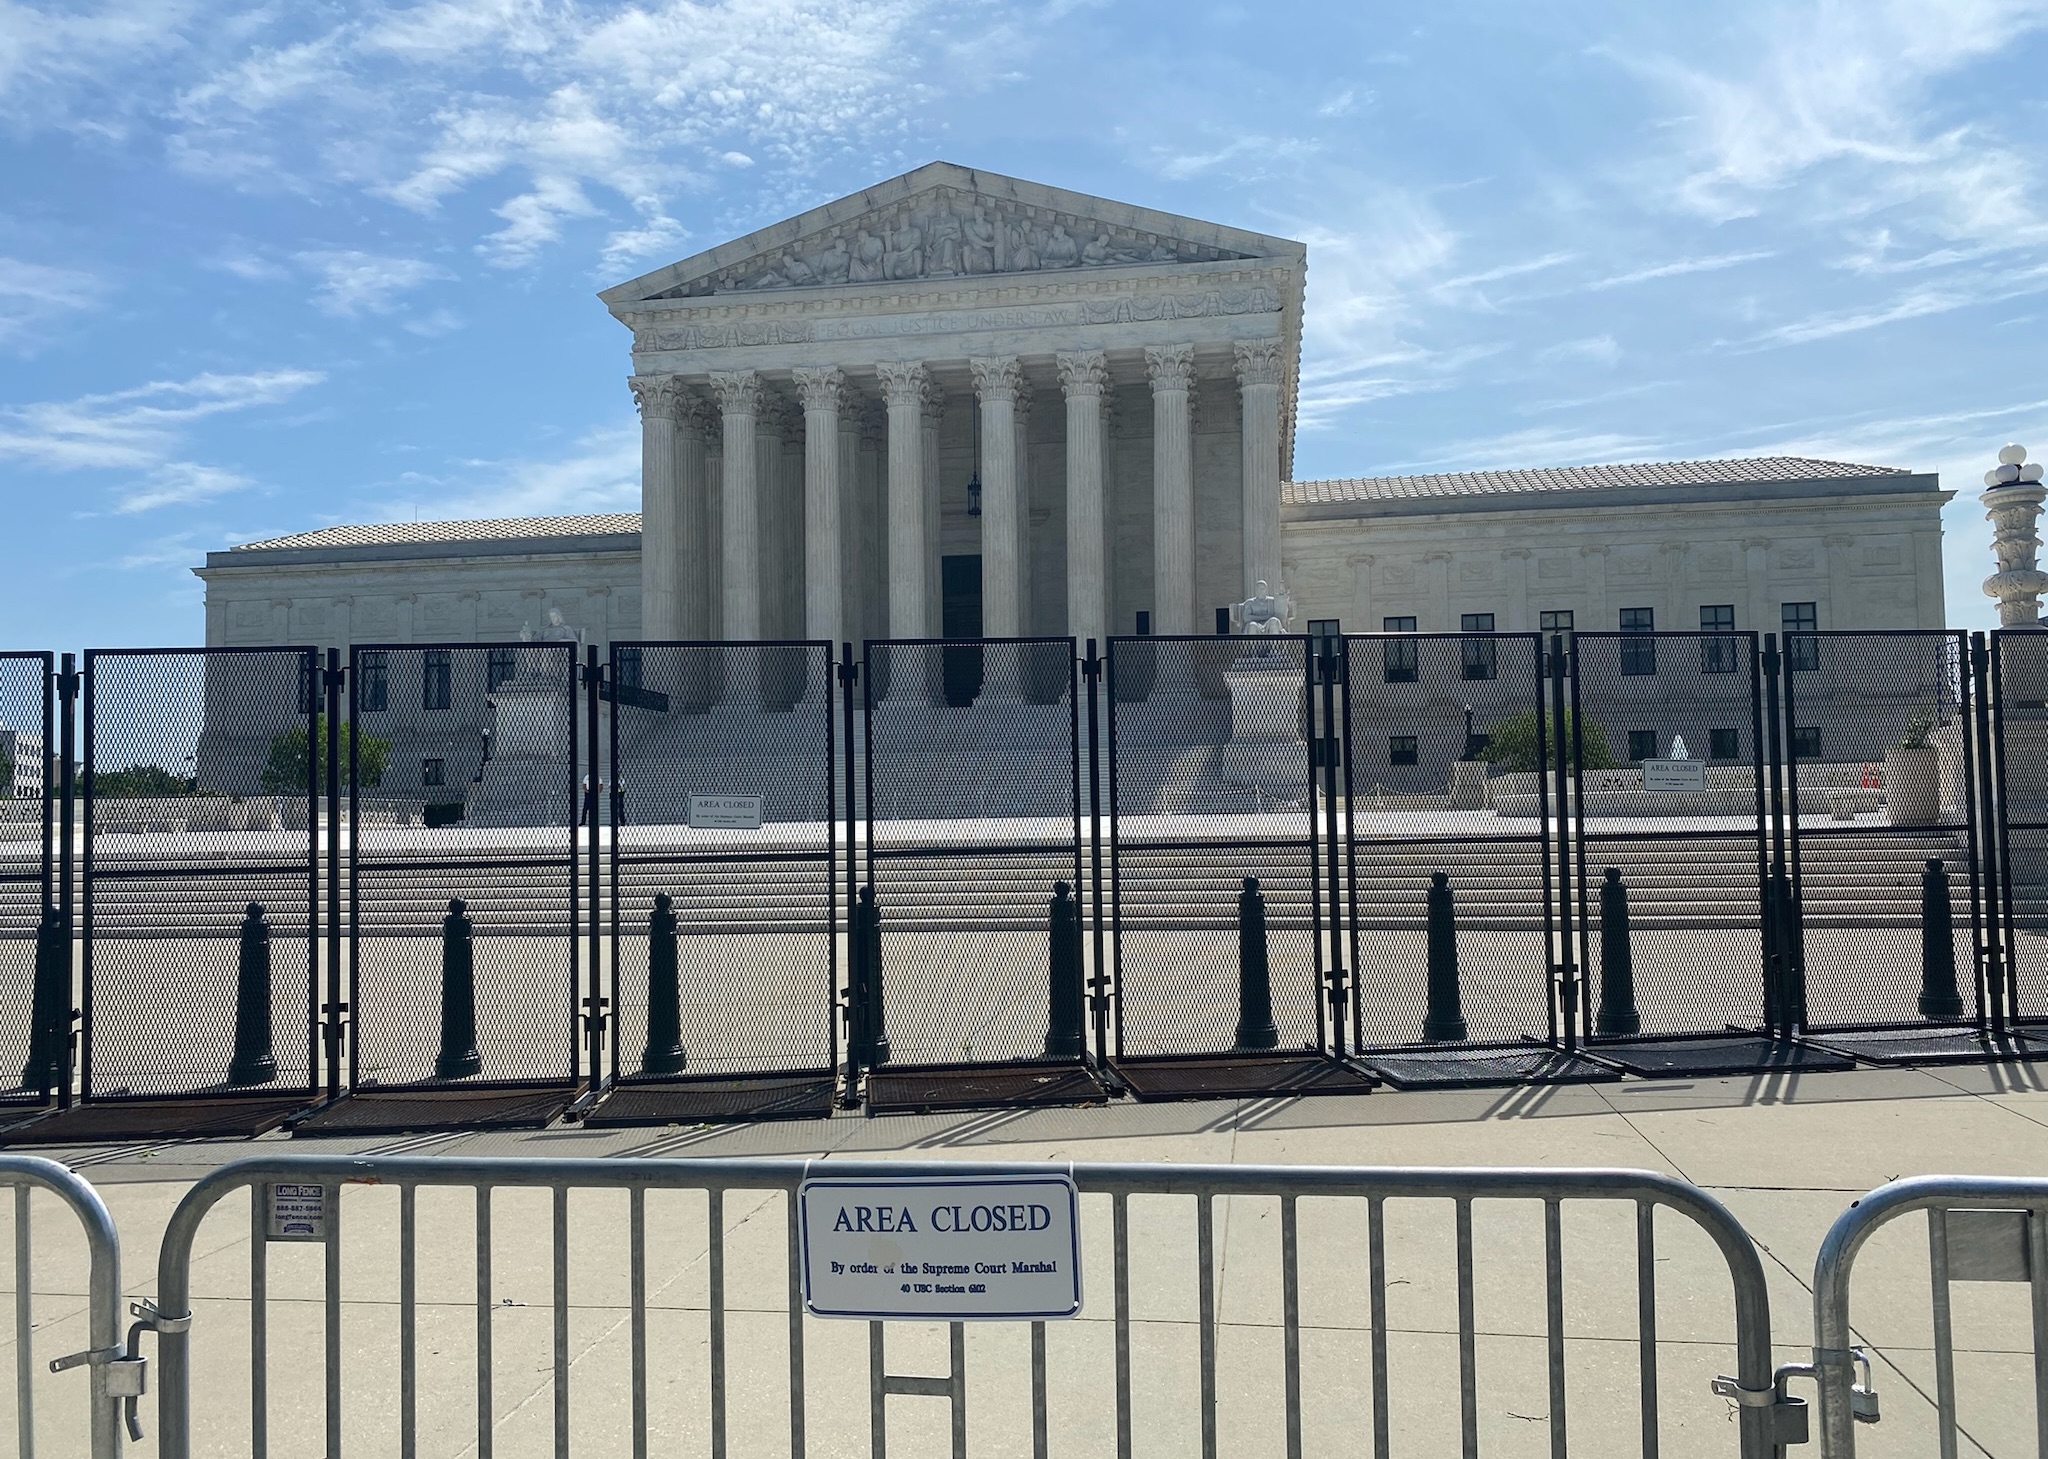 حصار بلند مشکی و دروازه ای با یک "منطقه بسته" تابلویی مقابل ساختمان دادگاه عالی